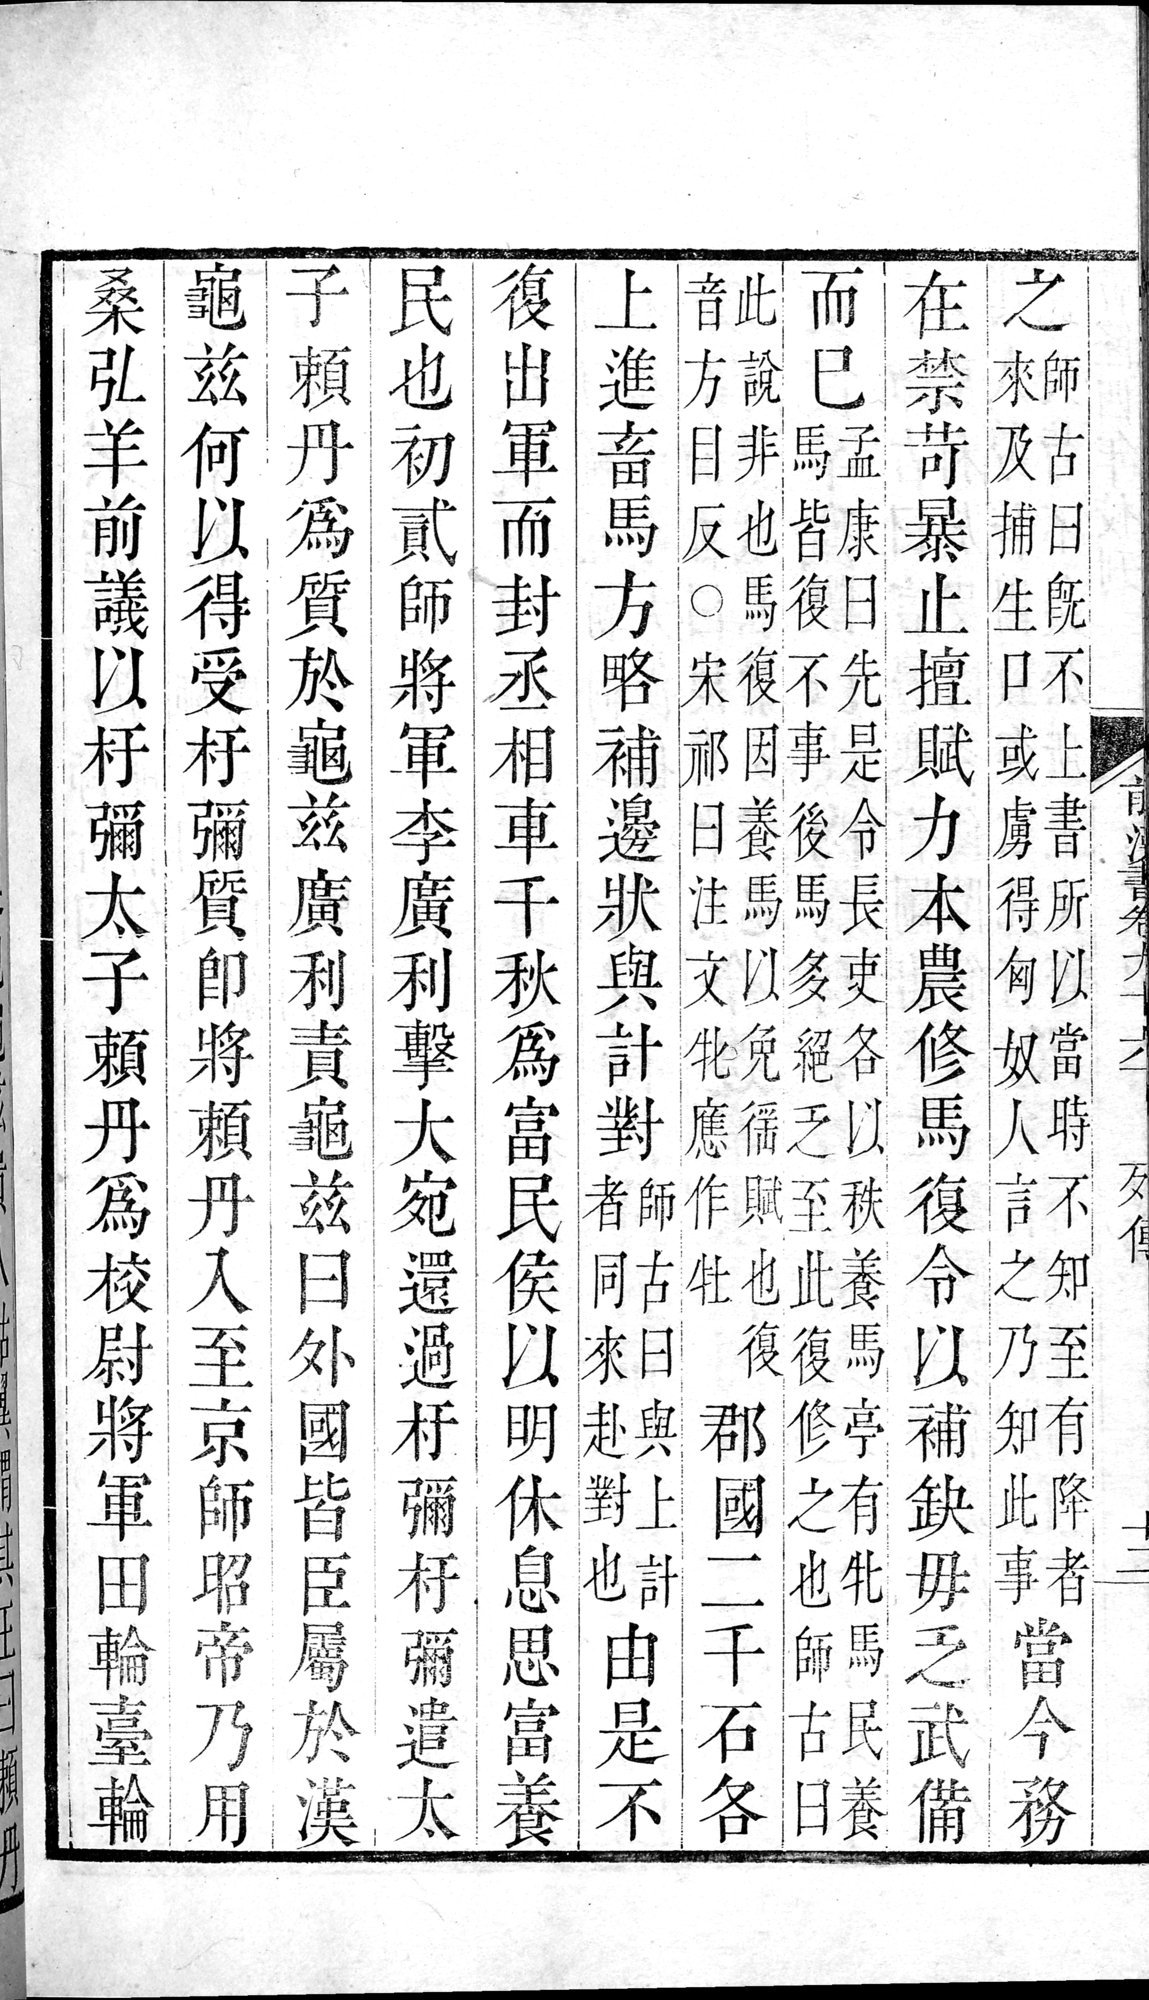 前漢書 巻96下 : vol.96 bottom / Page 24 (Grayscale High Resolution Image)